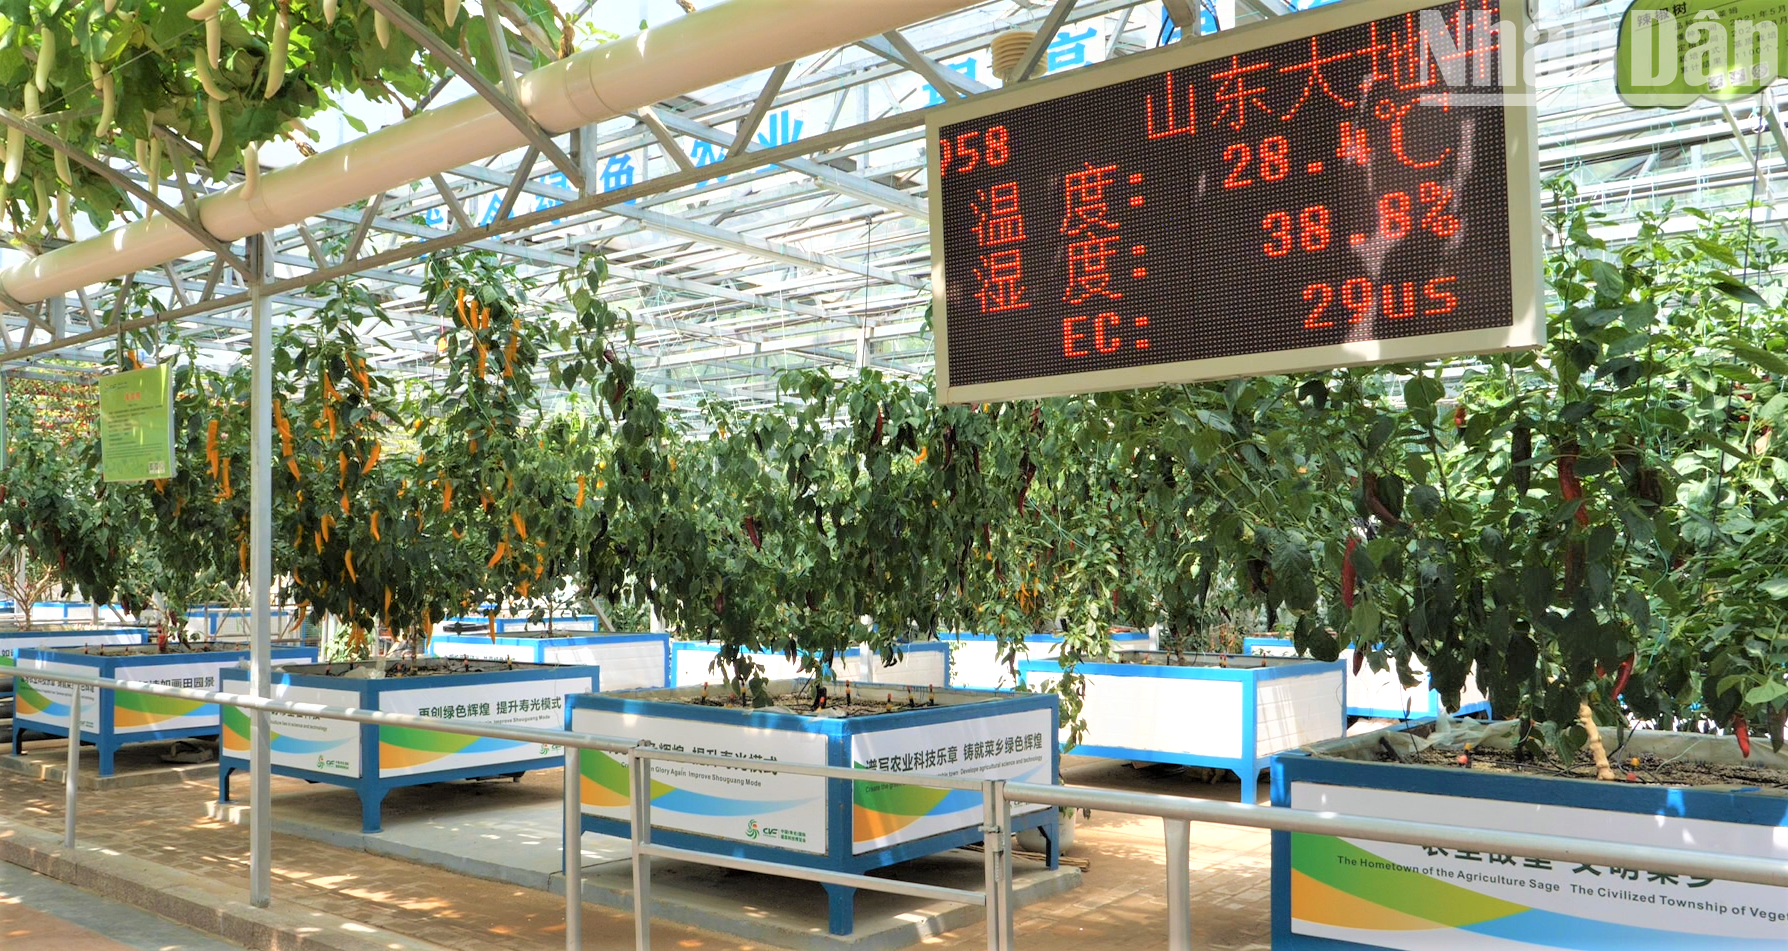 Hàng trăm giống cây độc lạ tại vựa rau lớn nhất Trung Quốc ảnh 6